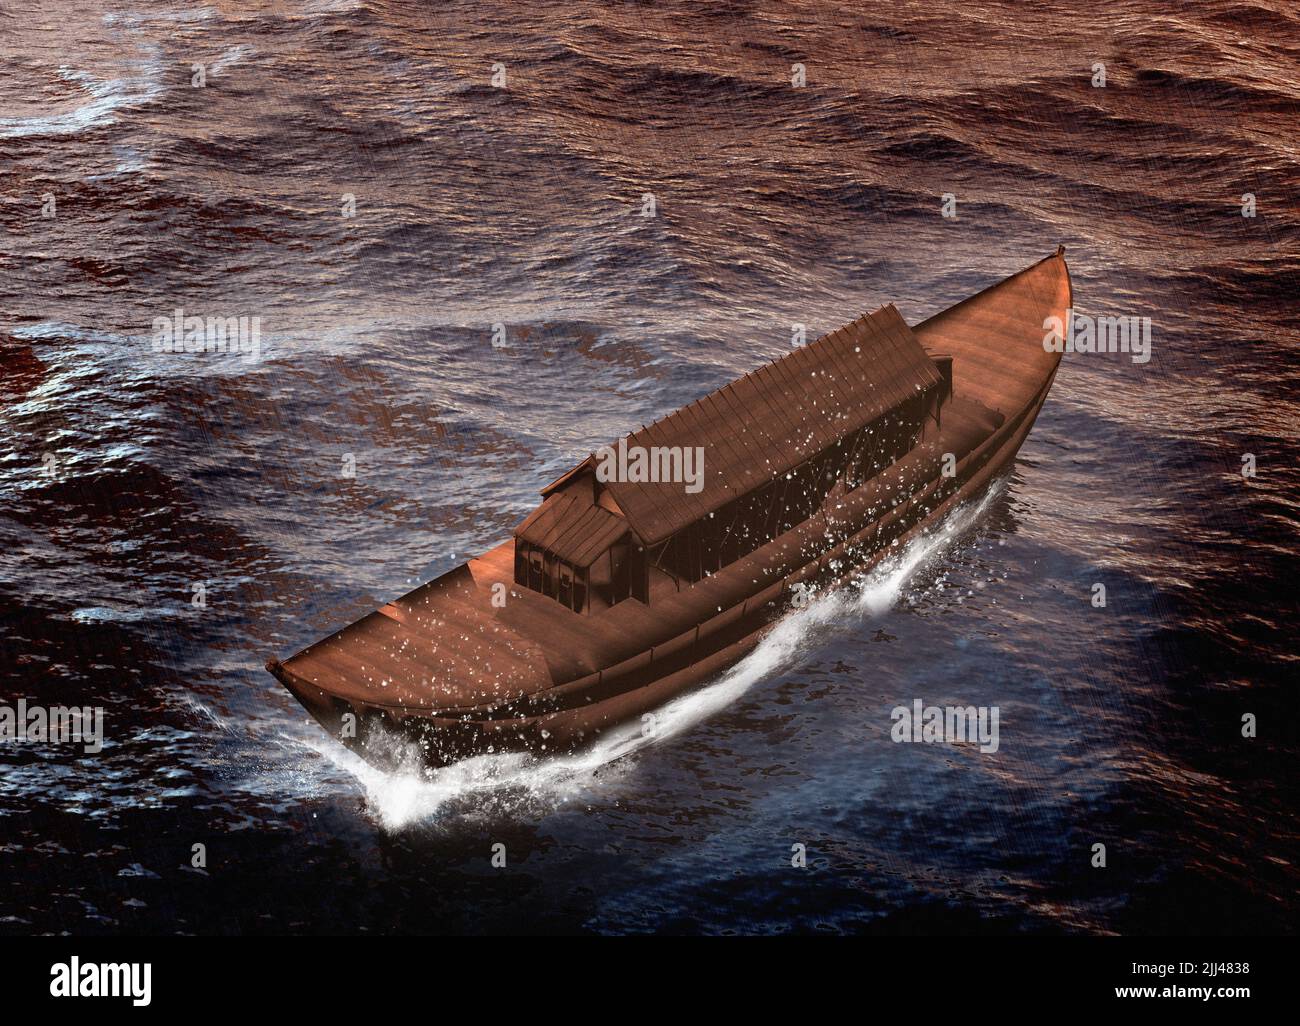 Noah's ark, illustration. Stock Photo